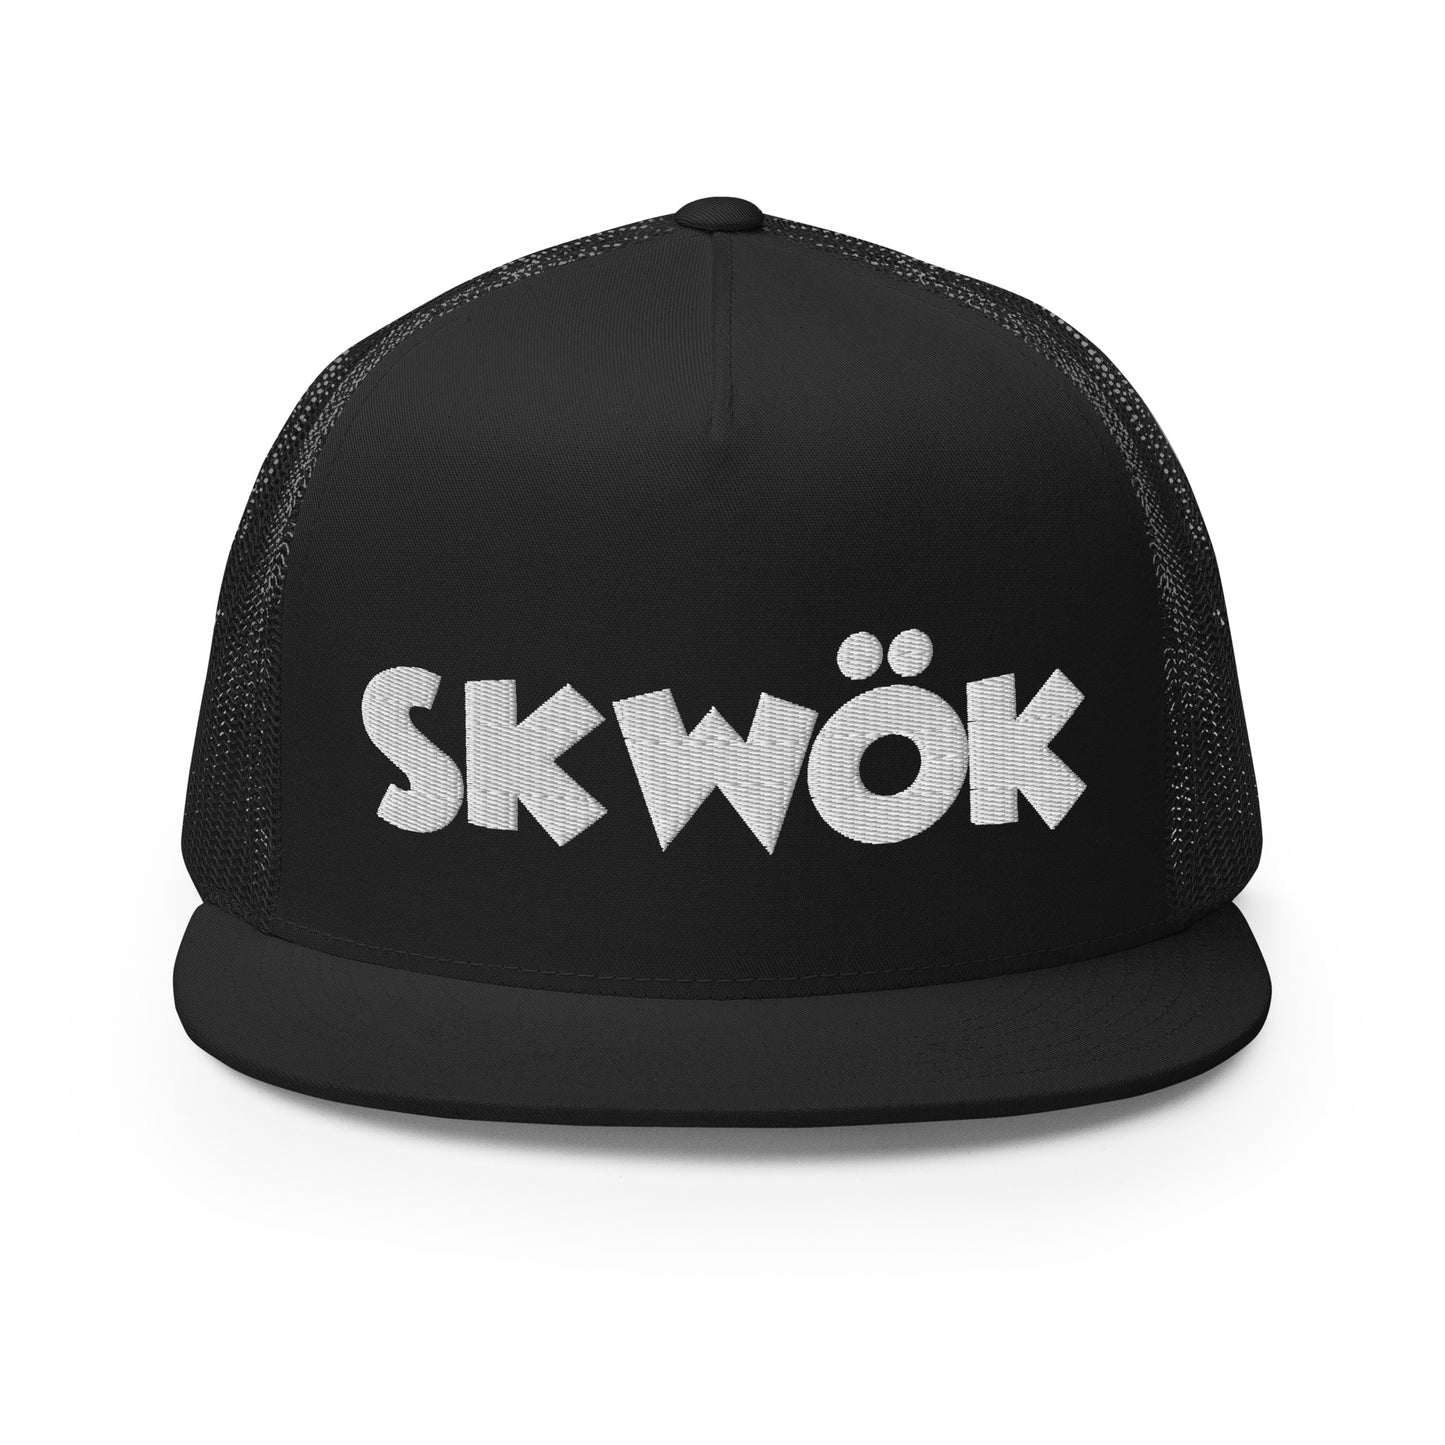 Skwok Brand / Hat / Trucker Cap / OG Logo / 3D Puff / Black / White